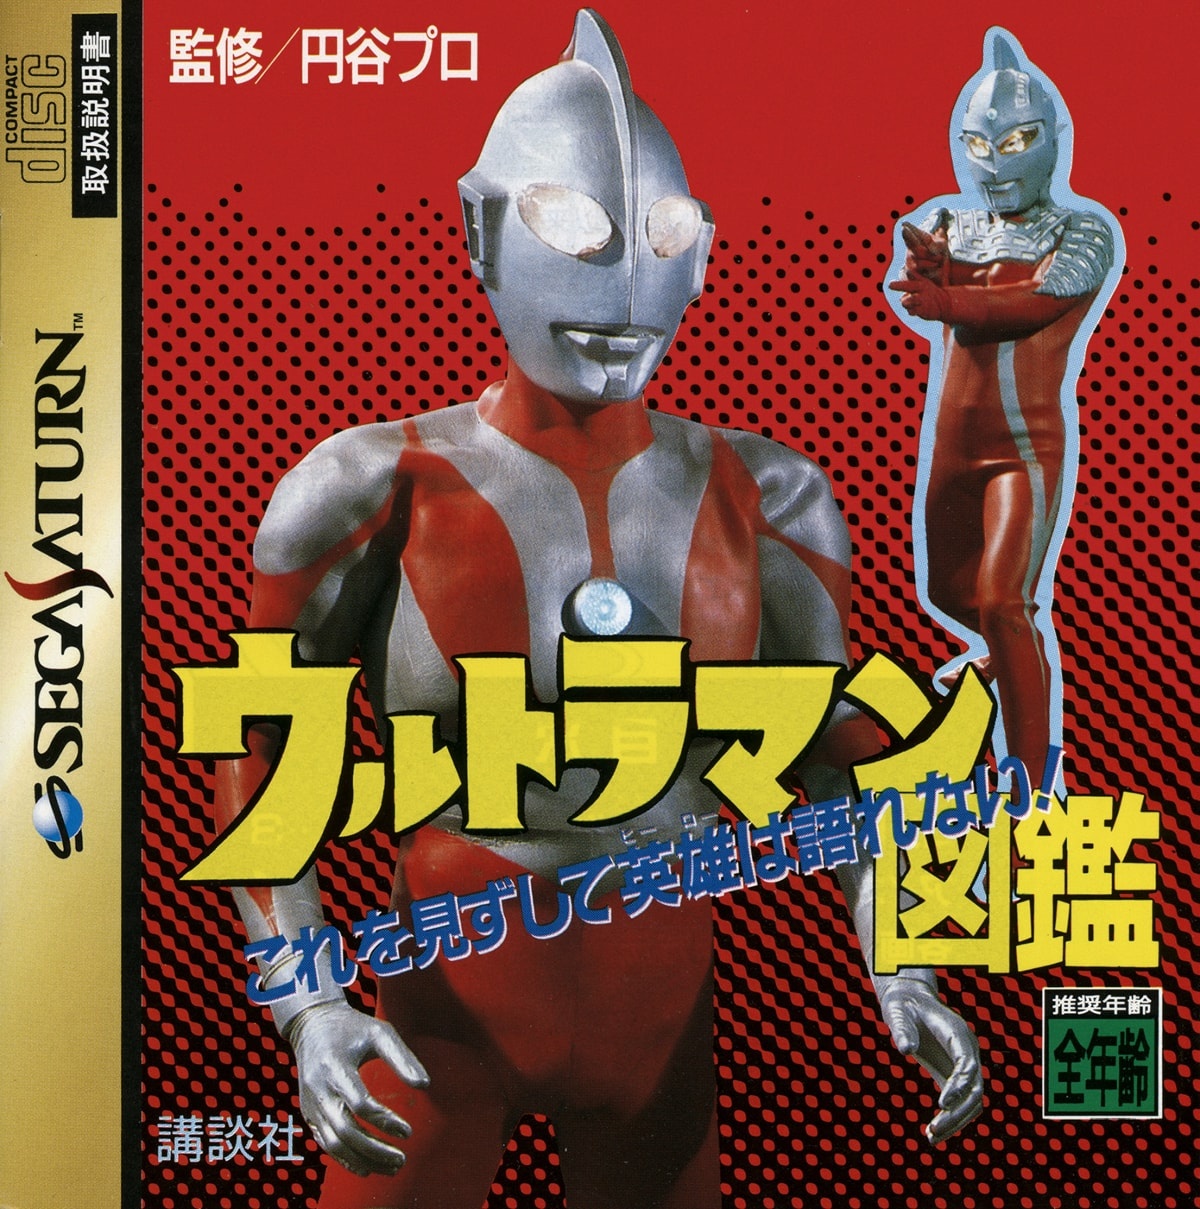 Capa do jogo Ultraman Zukan